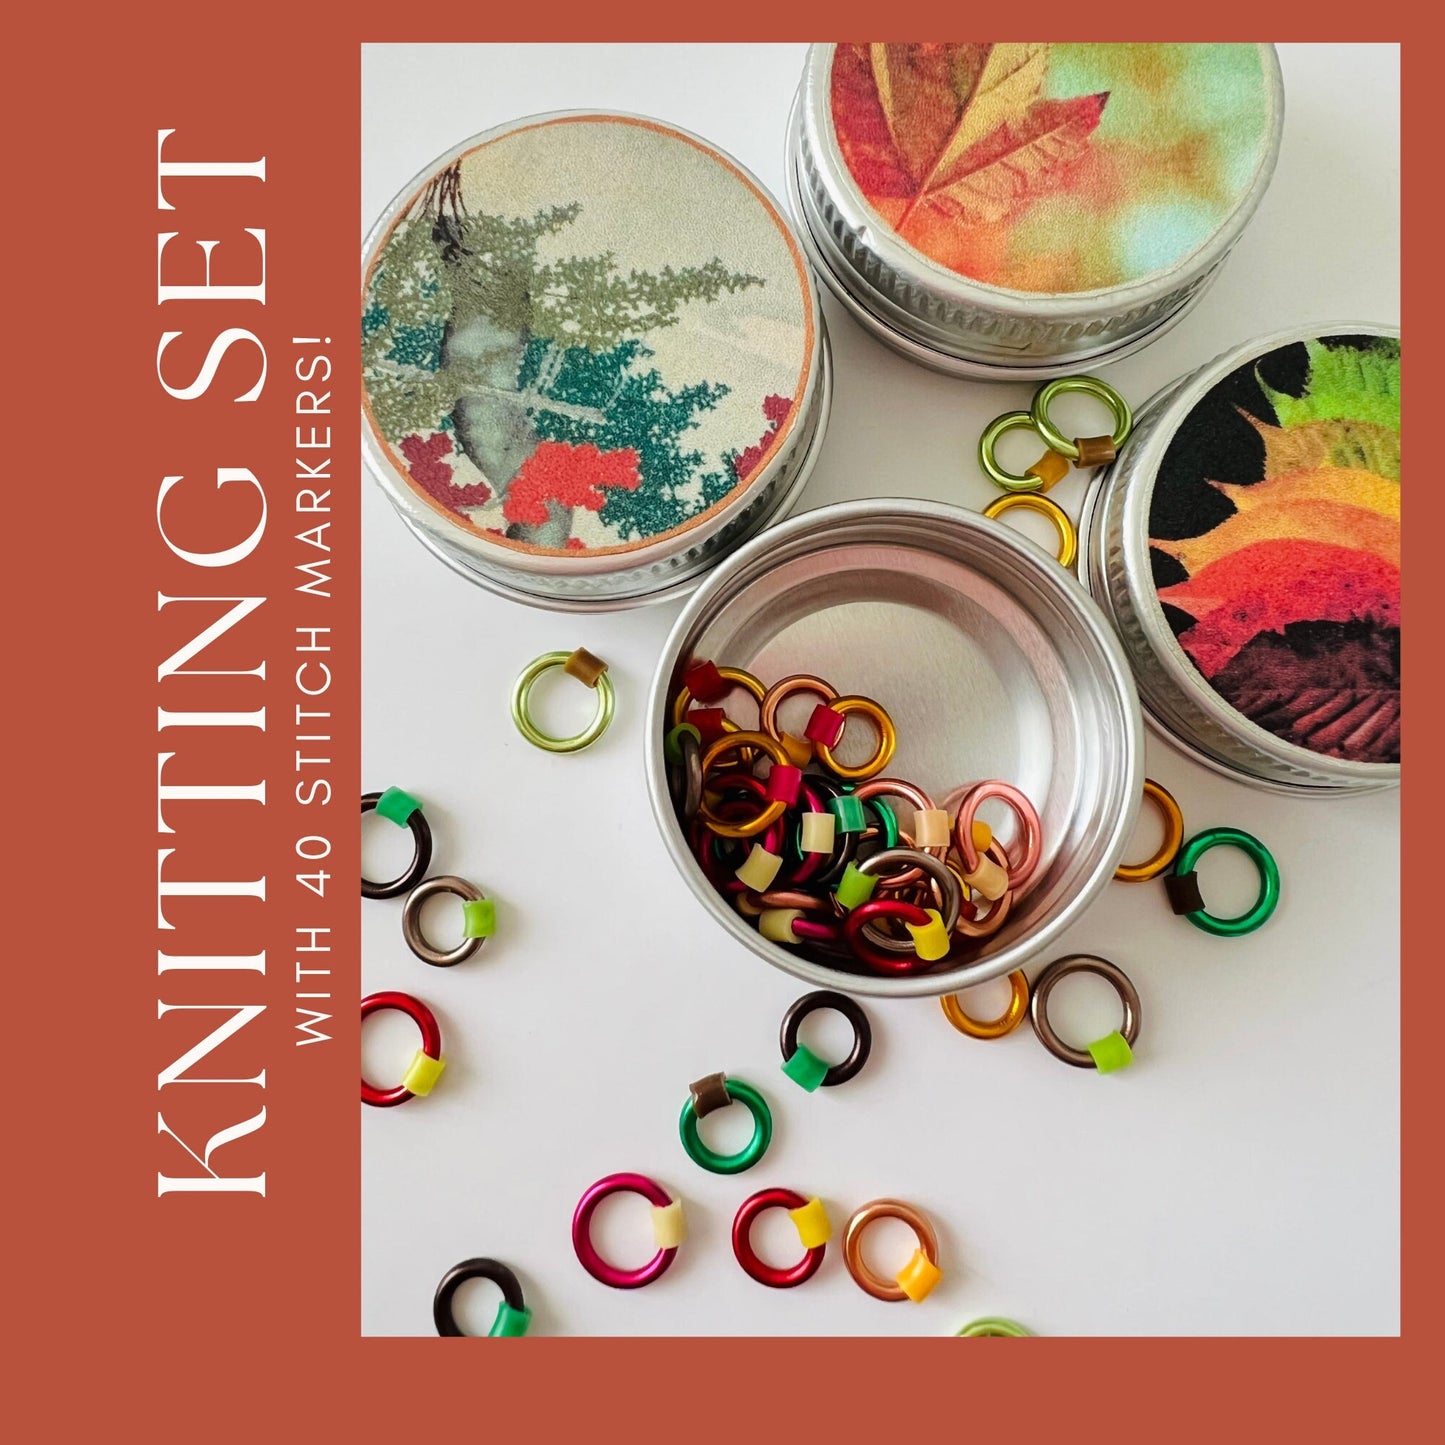 Knitting Stitch Markers - Autumn Set